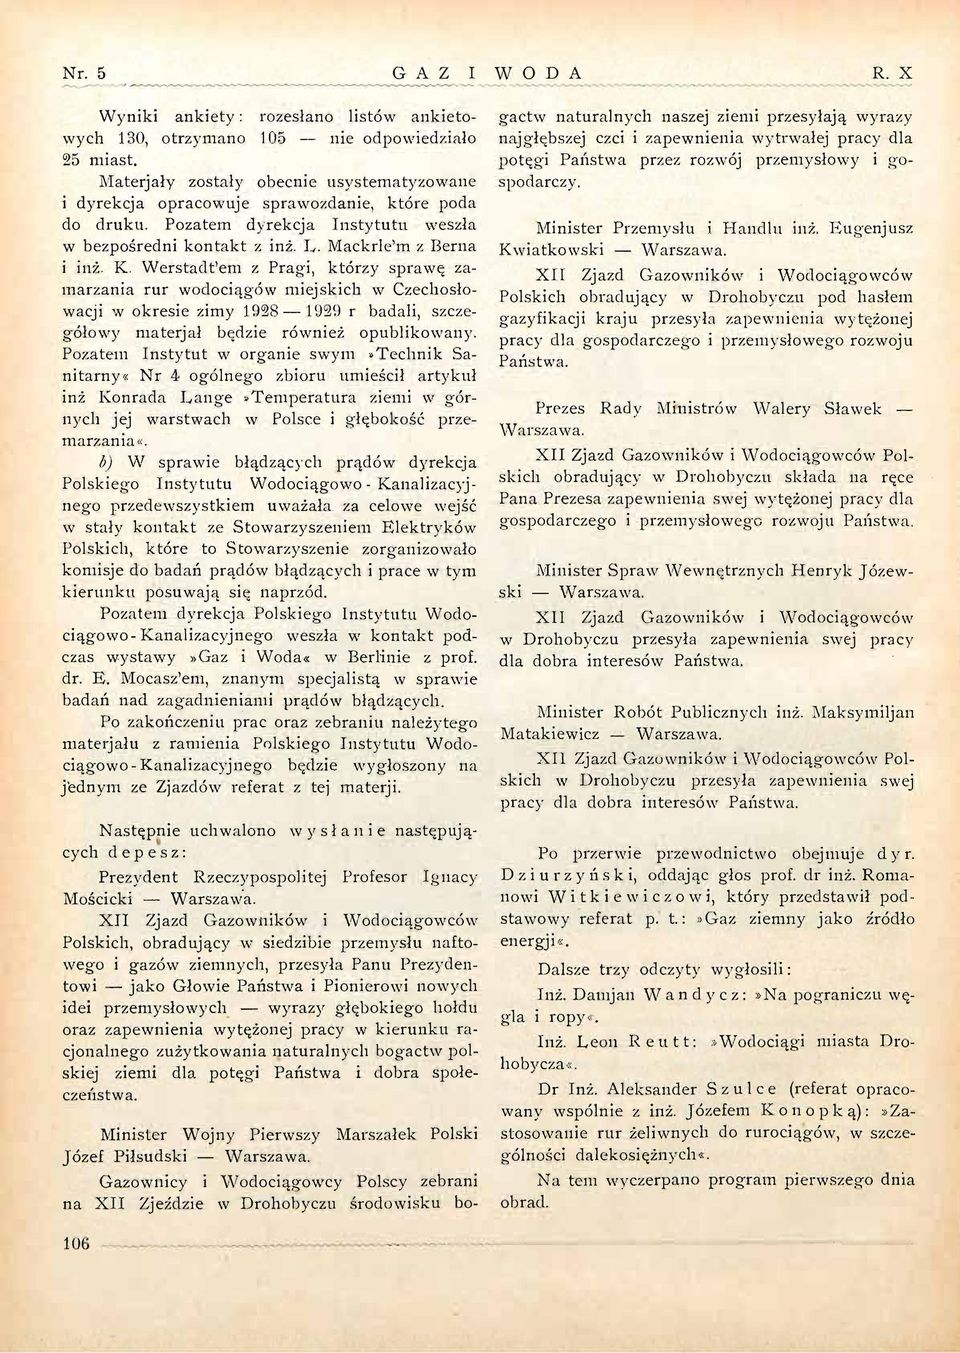 Werstadt'em z Pragi, którzy sprawę zamarzania rur wodociągów miejskich w Czechosłowacji w okresie zimy 1928 1929 r badali, szczegółowy materjał będzie również opublikowany.